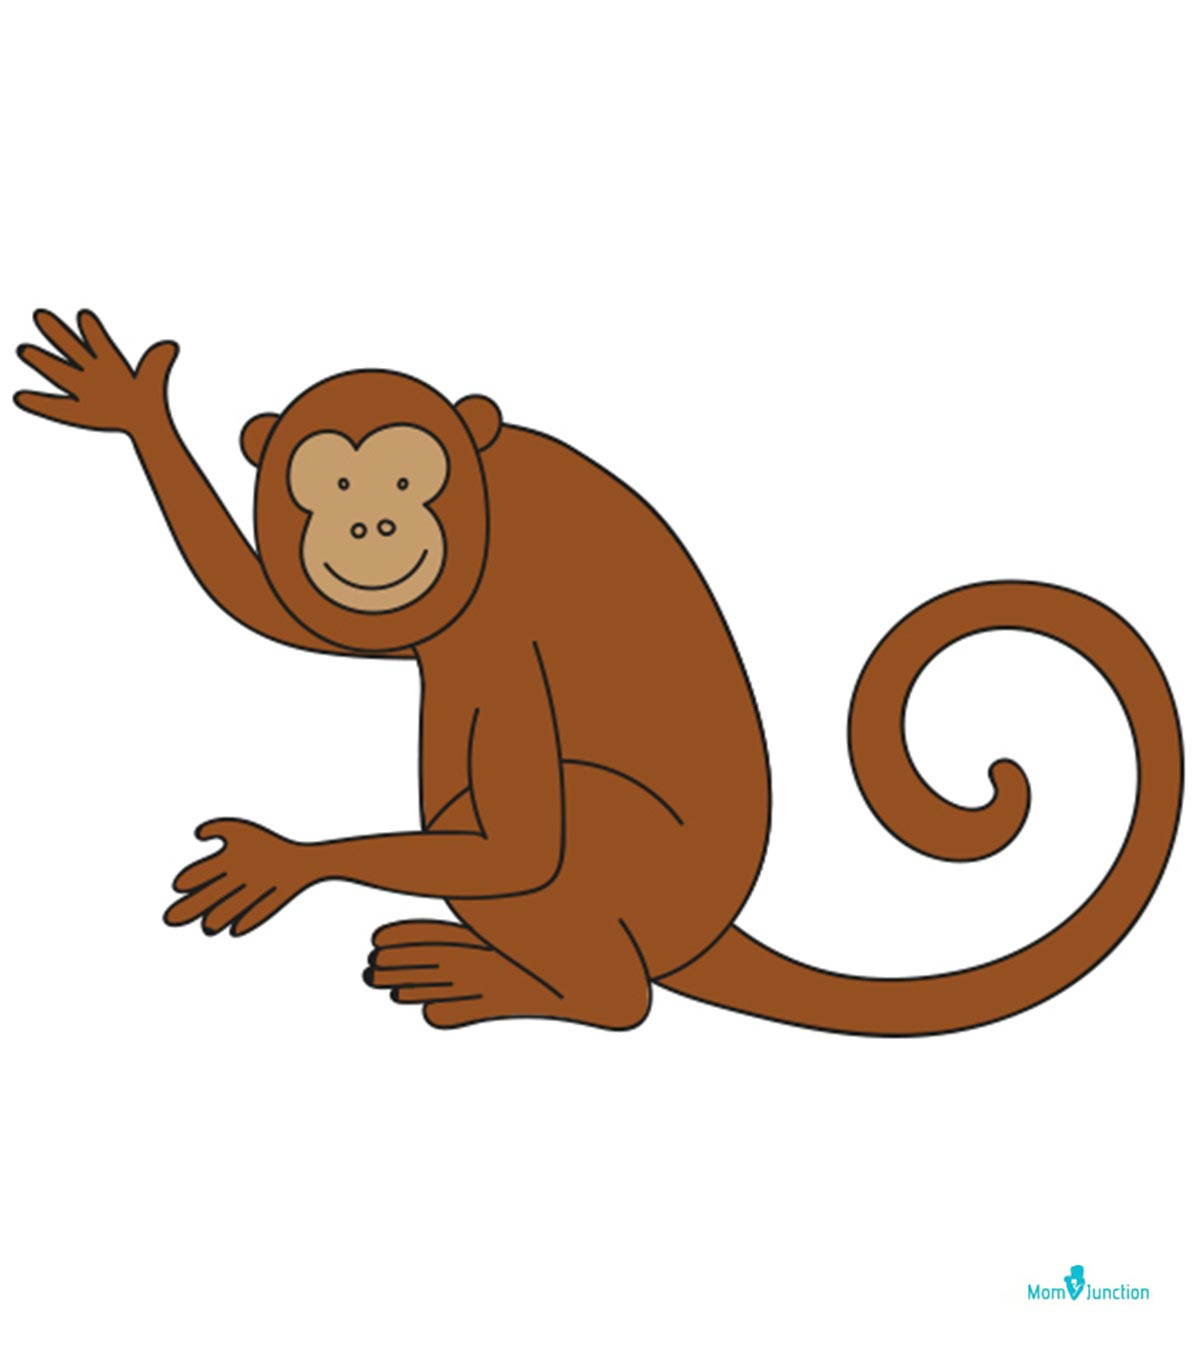 如何画一只猴子:简单的一步一步的孩子指南